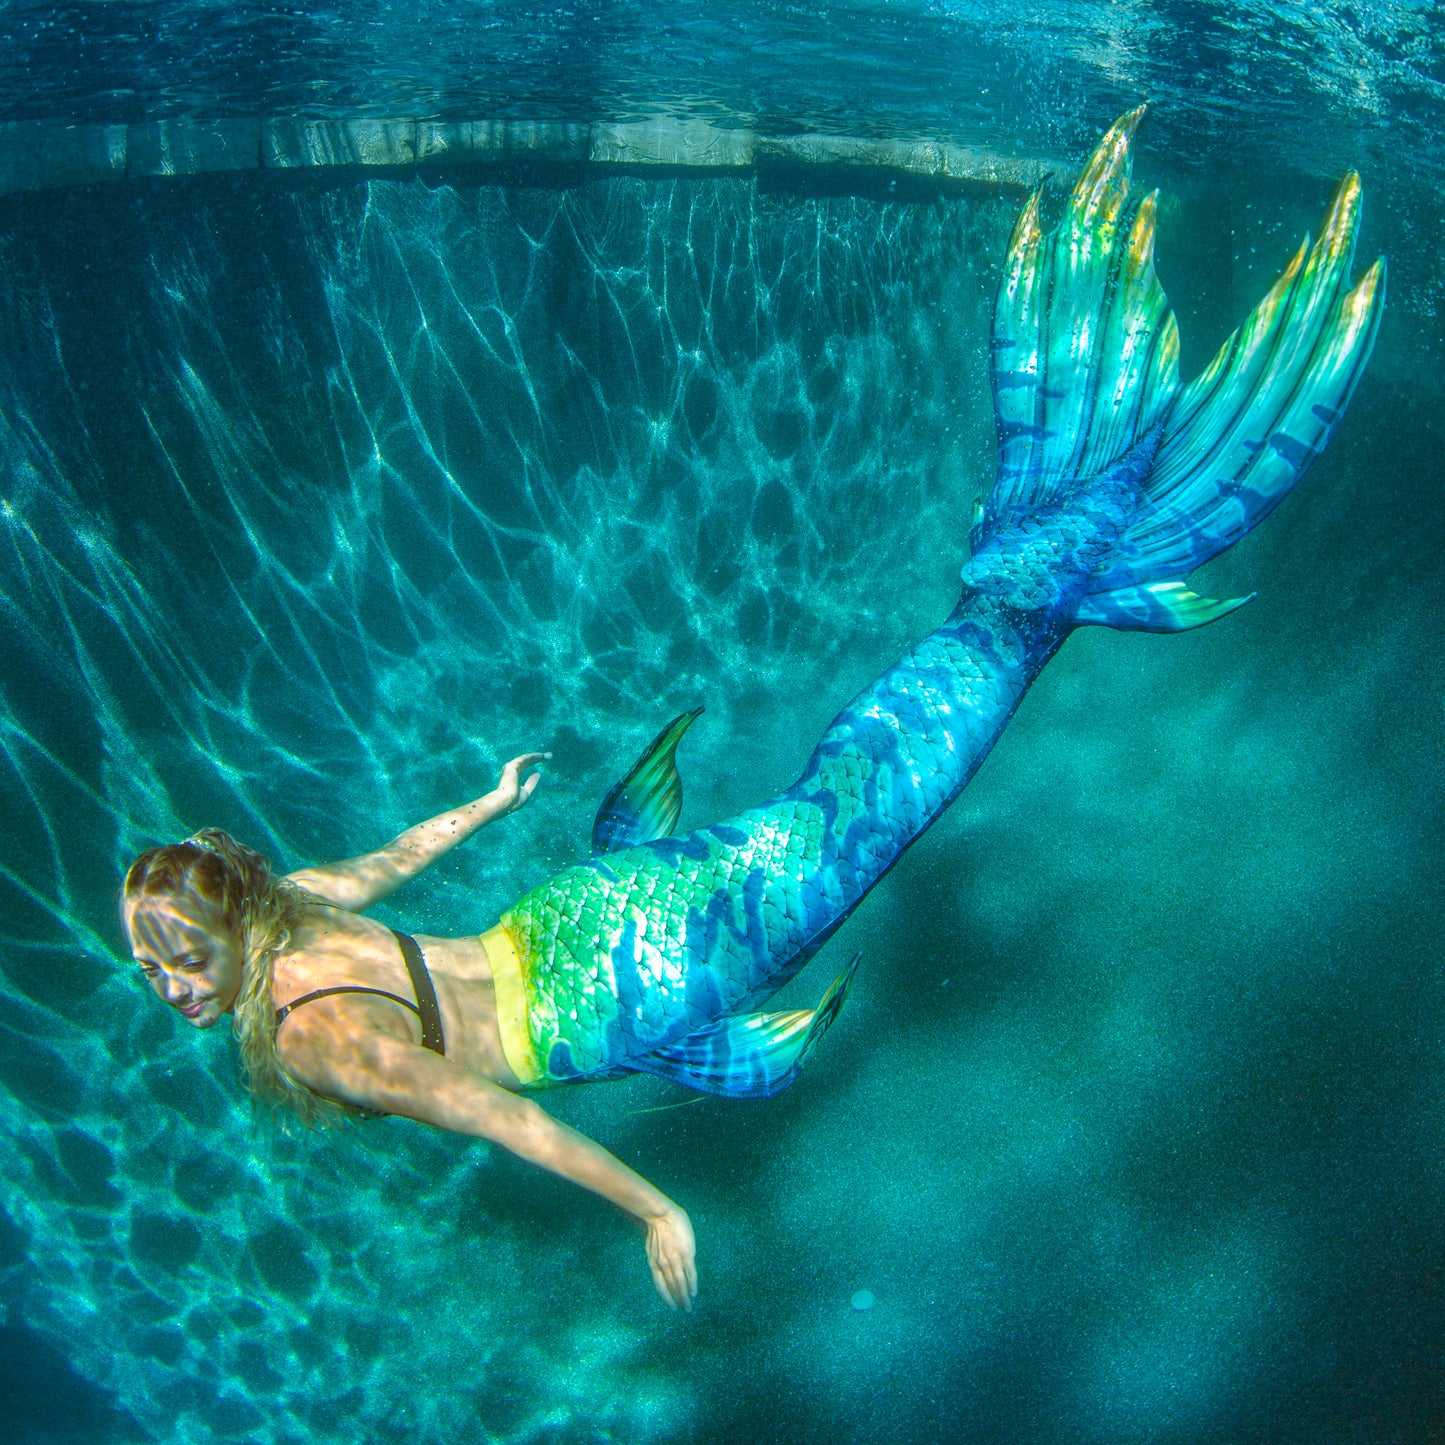 Jade Neptune Elite Mermaid Tail